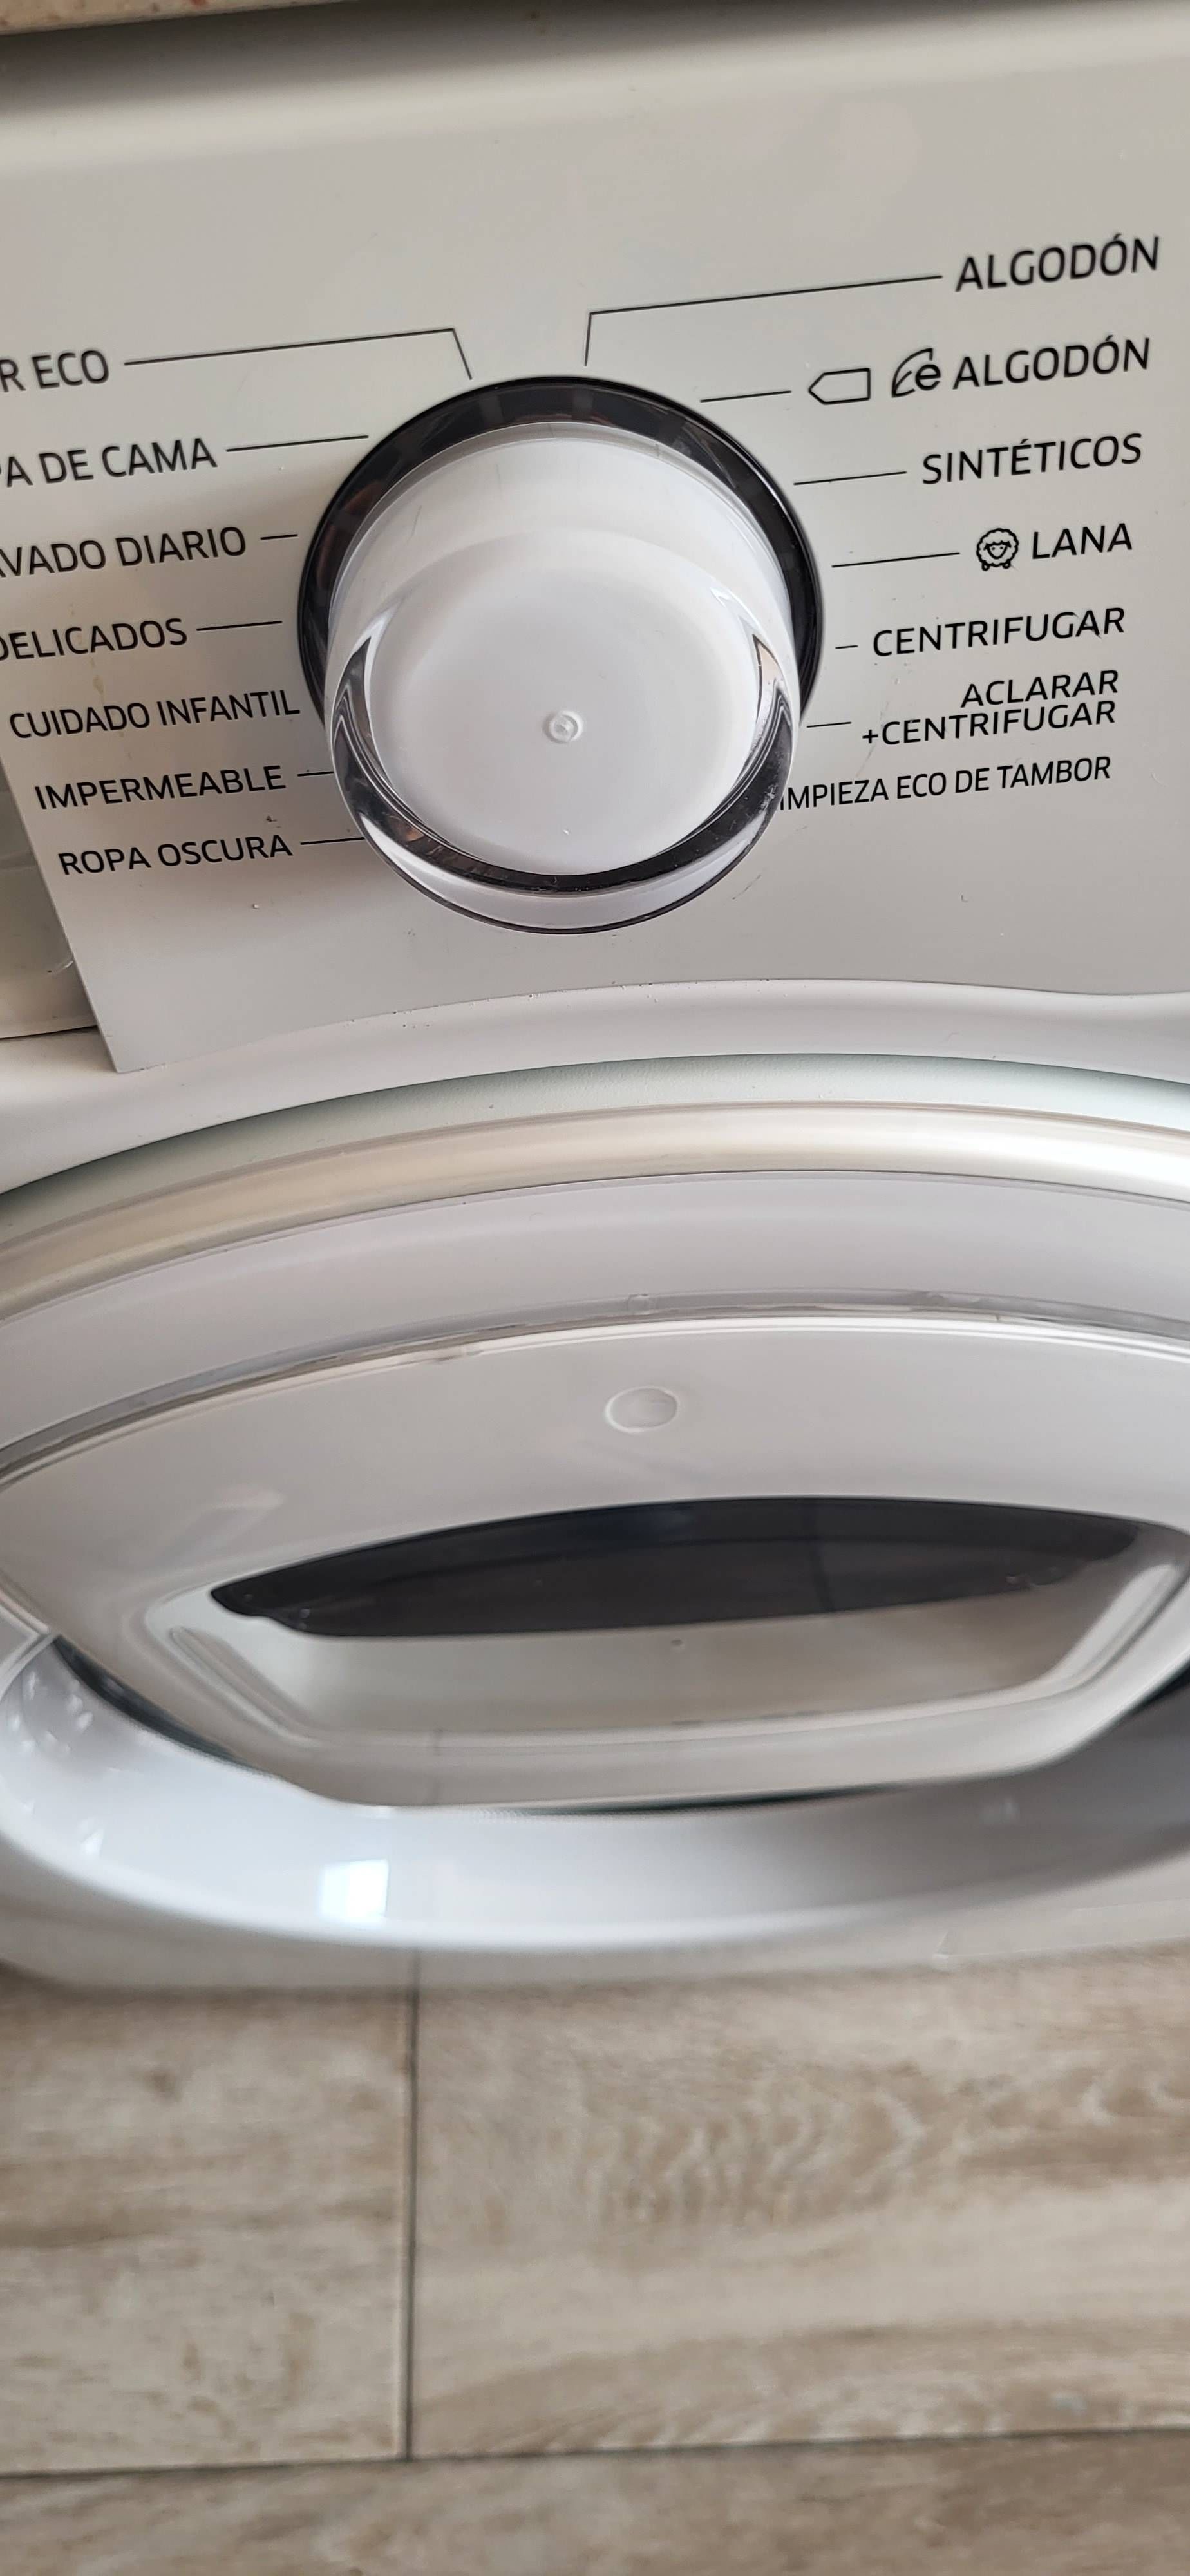 Solucionado: Problema carcasa tambor lavadora Ecobubble cristal - Página 4  - Samsung Community